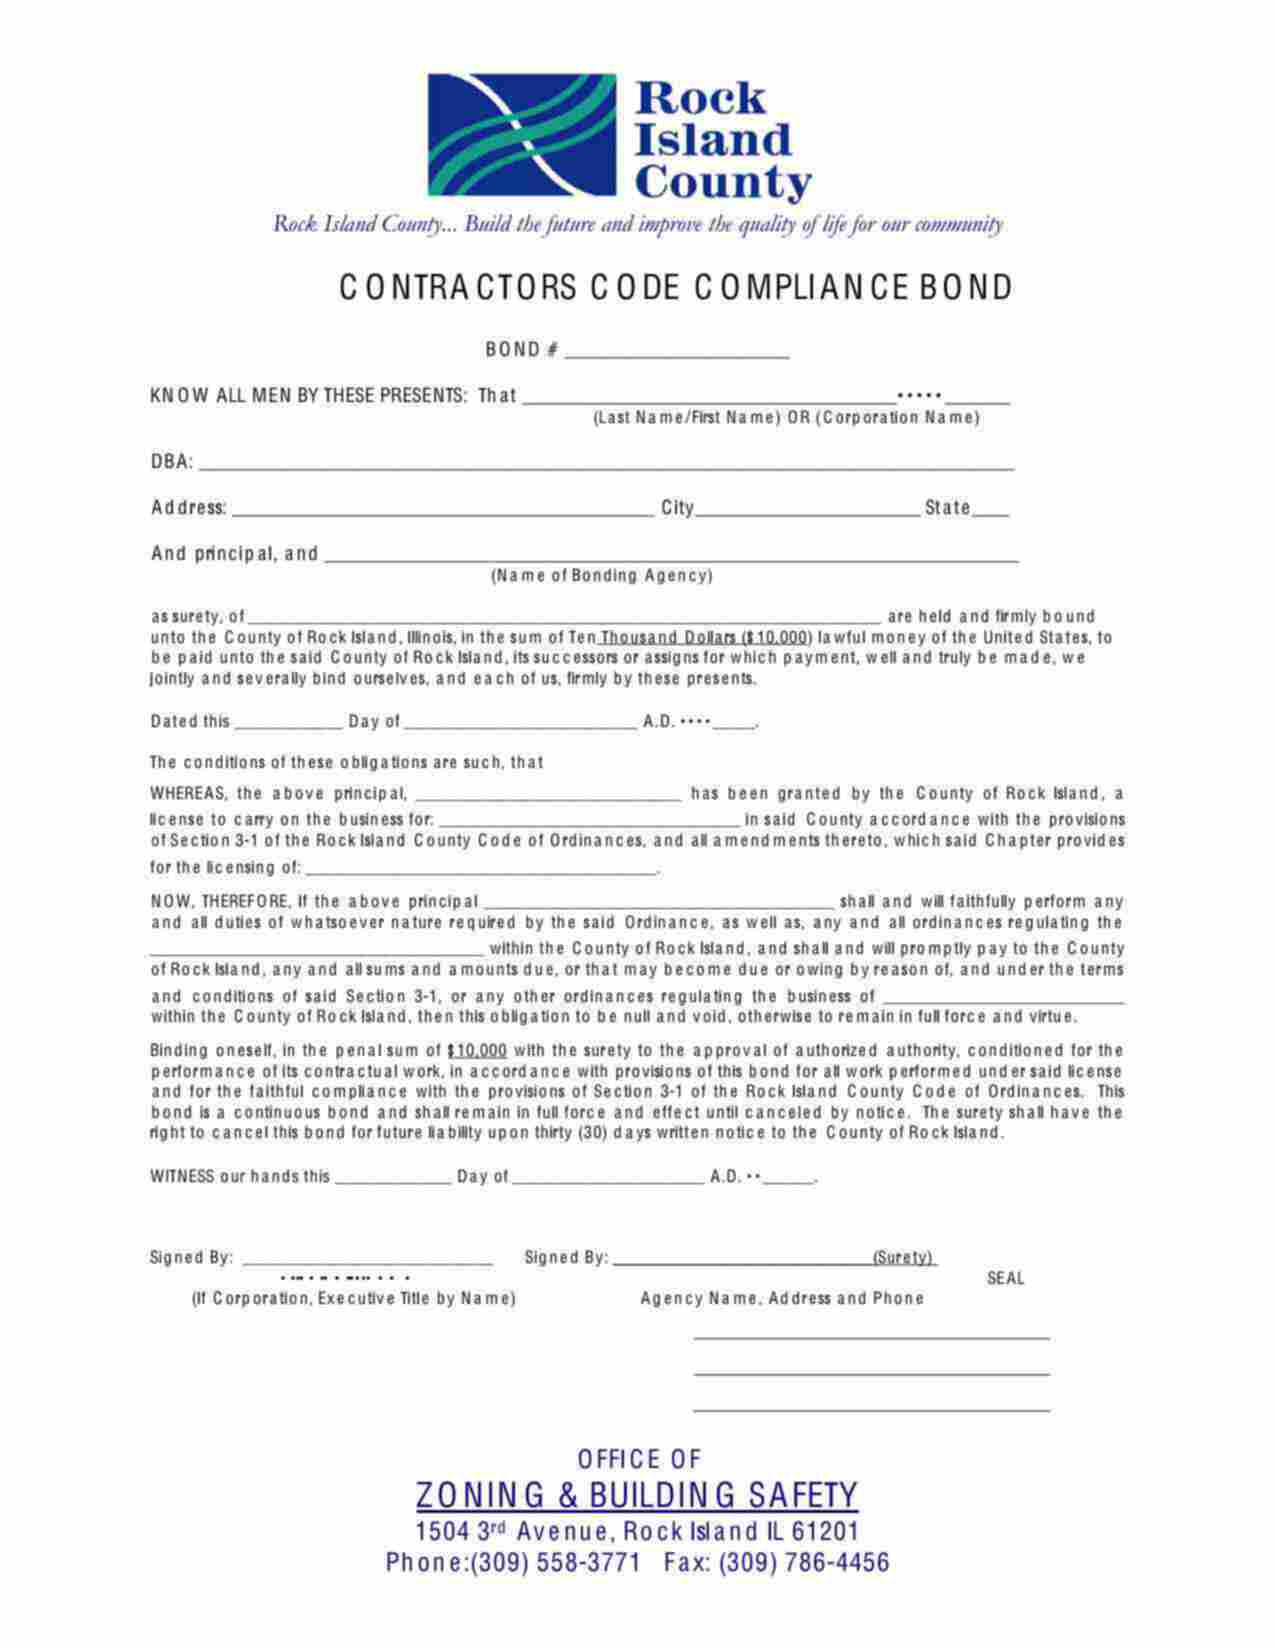 Illinois Contractors Code Compliance Bond Form